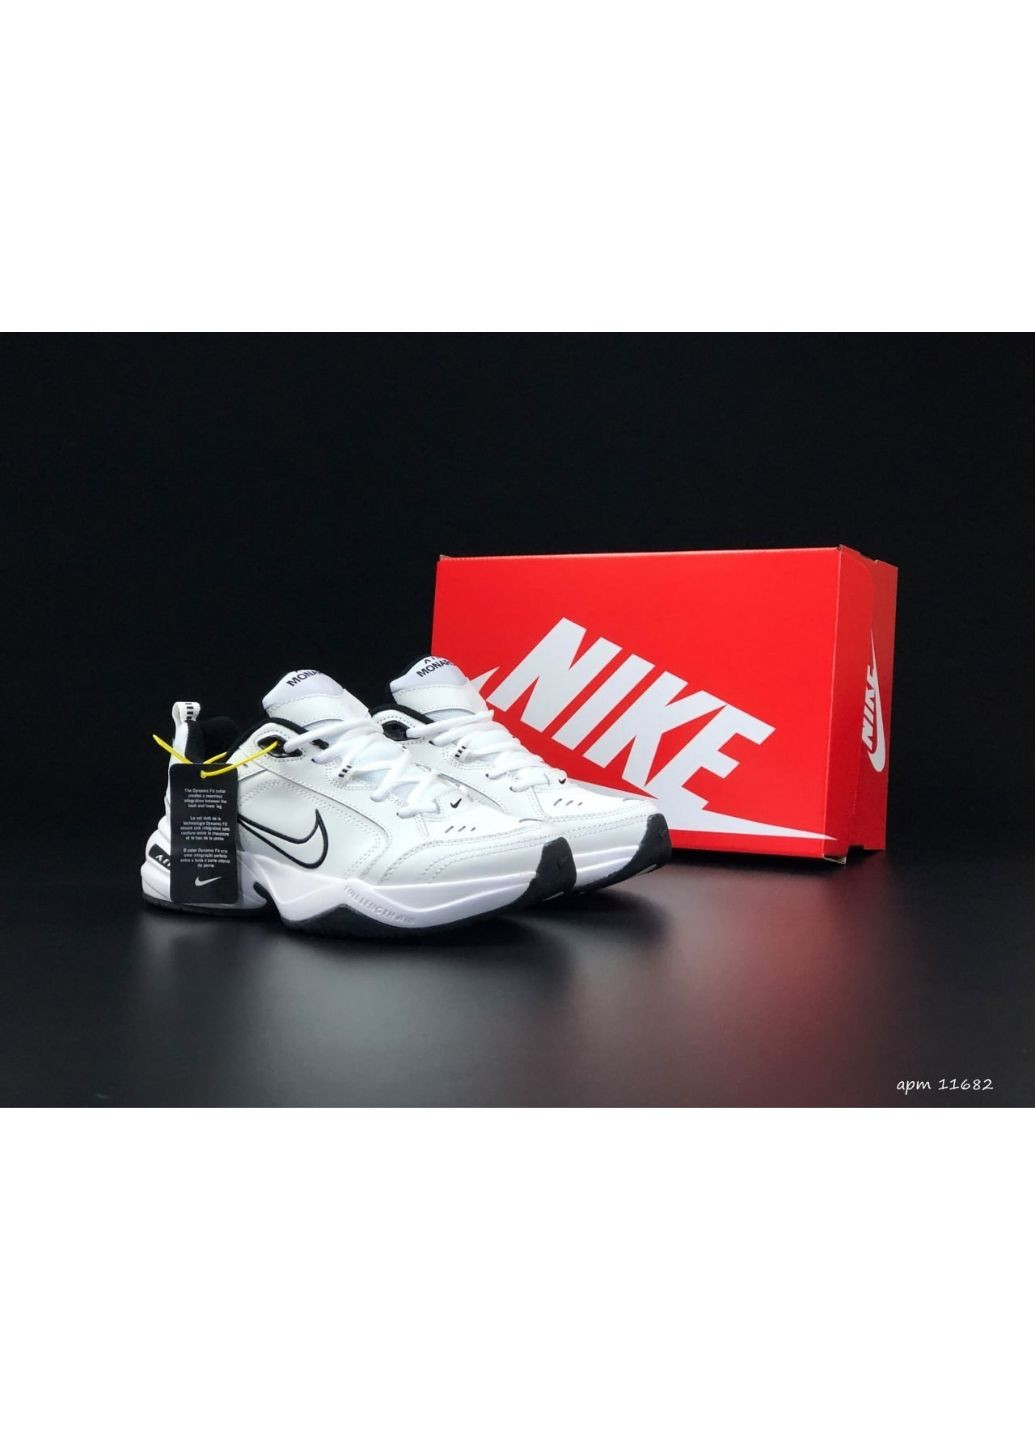 Білі Осінні чоловічі кросівки білі «no name» Nike Air Monarch